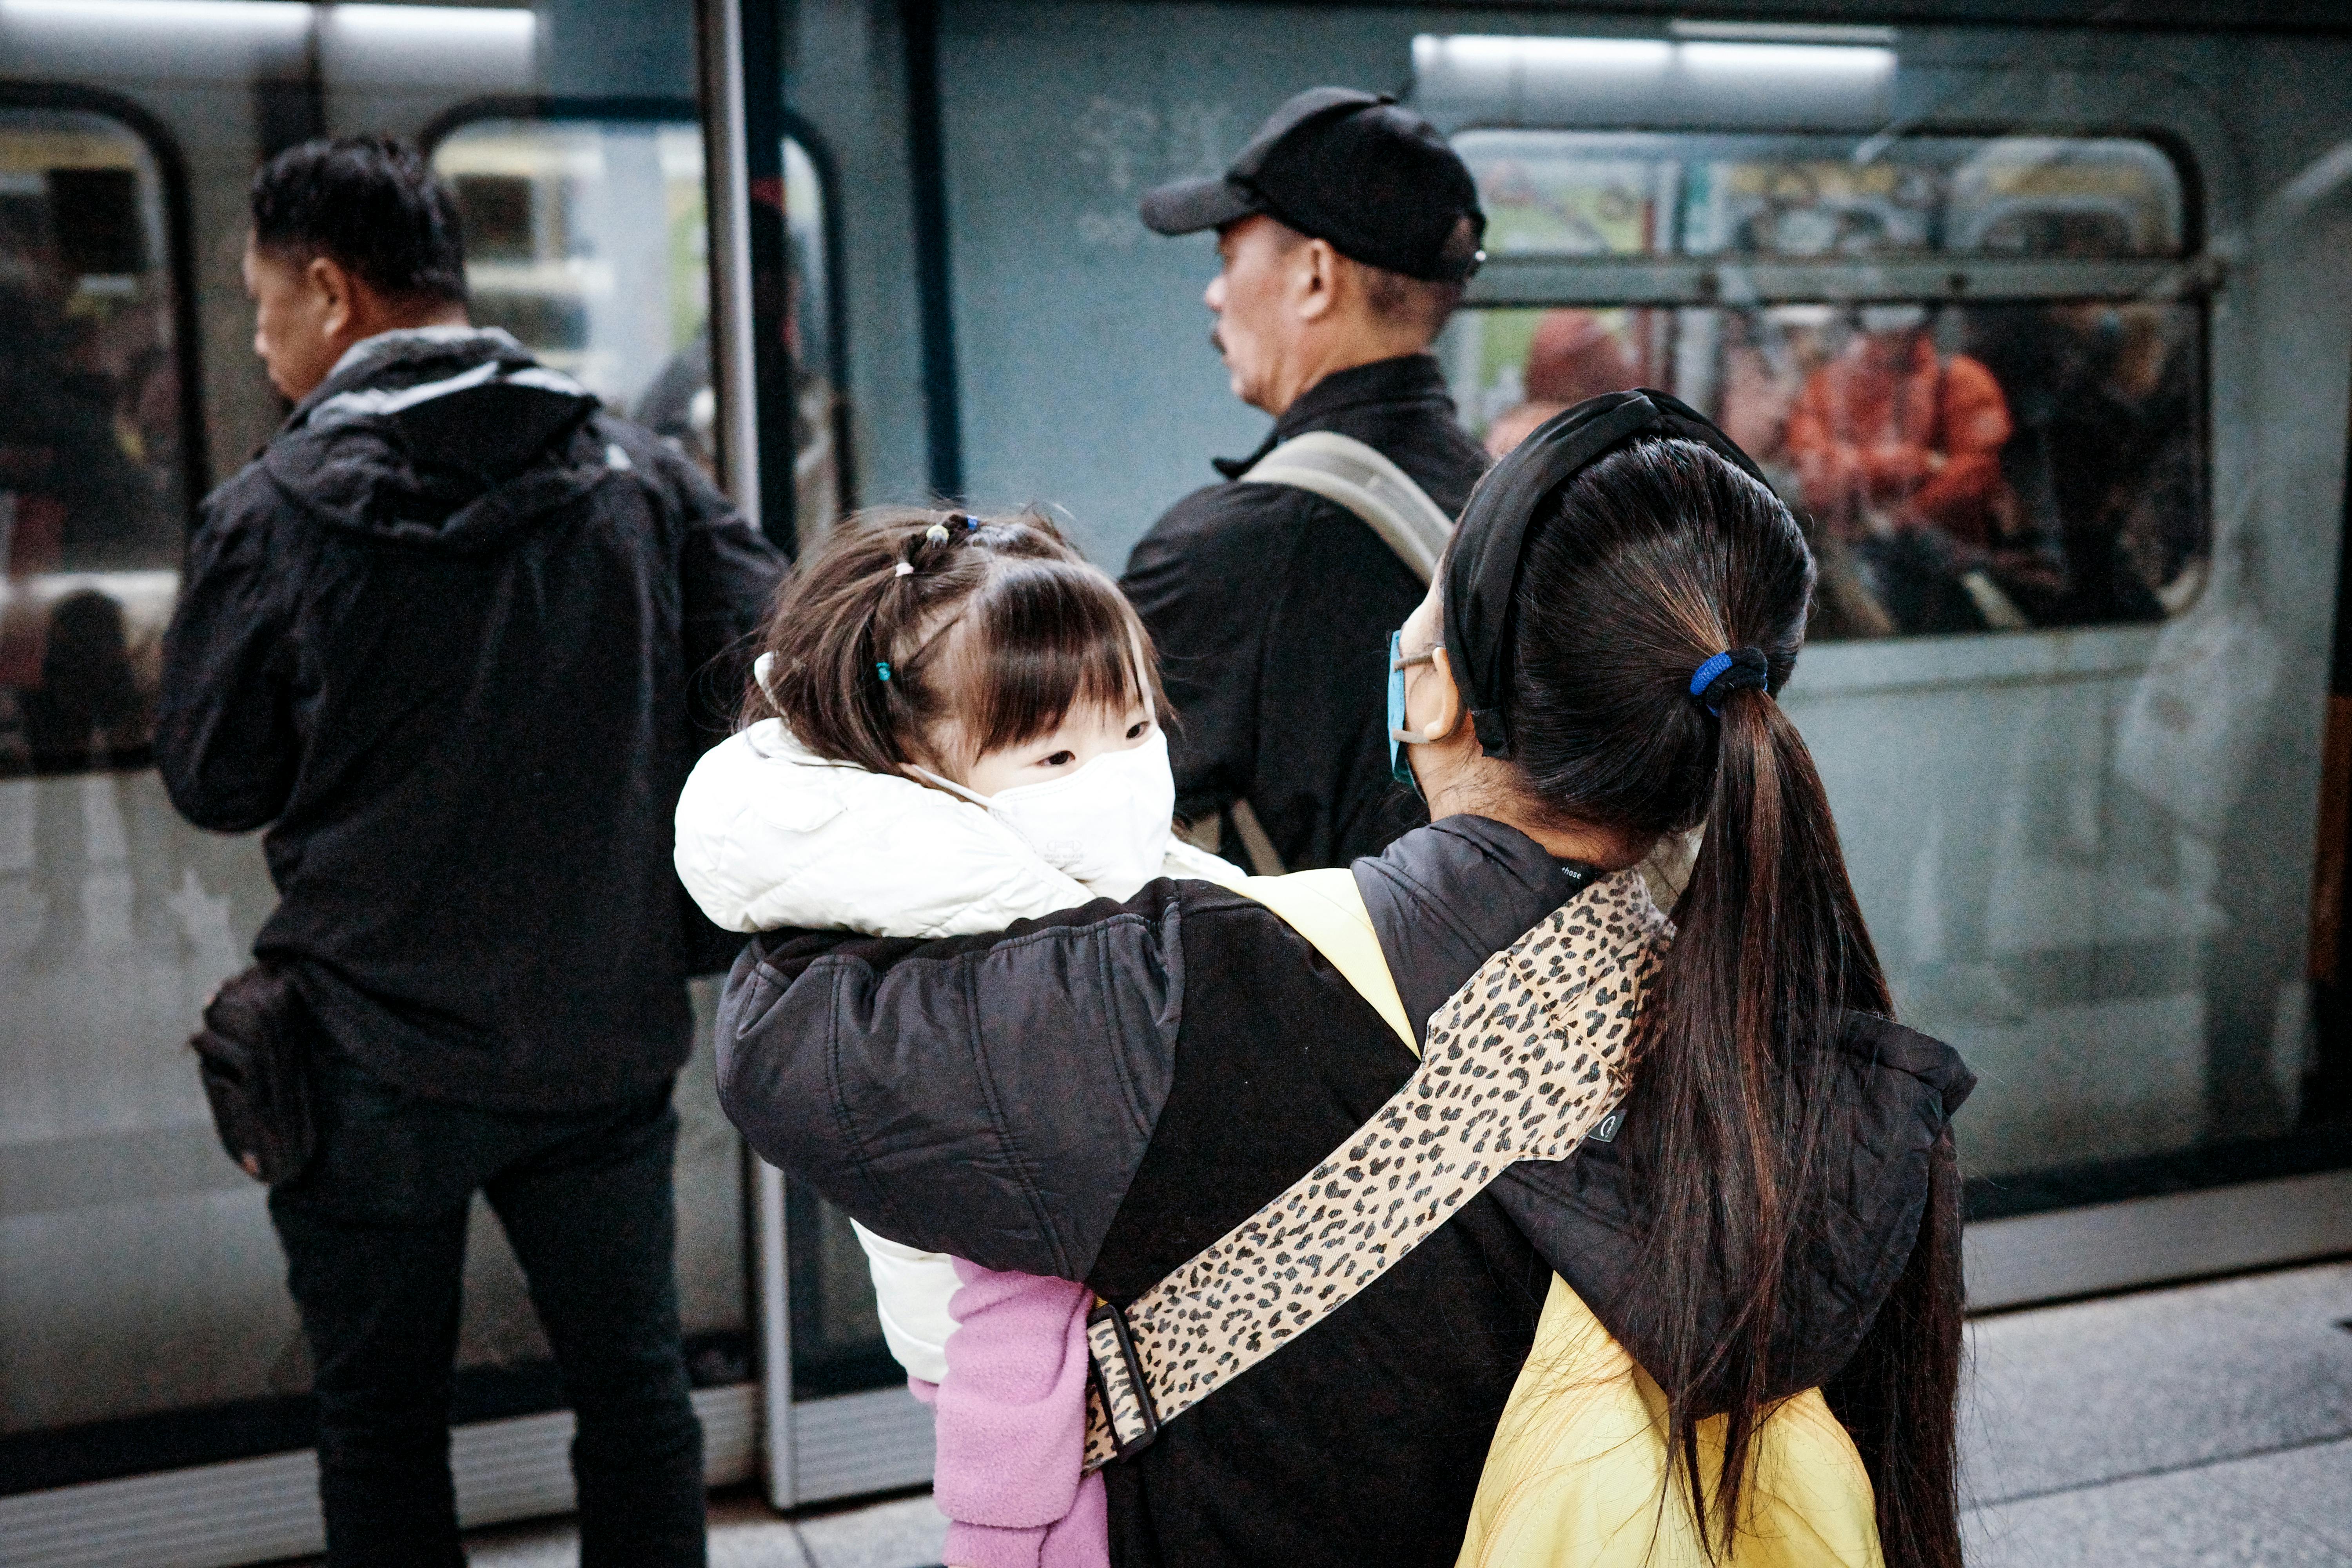 Una mujer con un niño en brazos a punto de subir al metro | Foto: Pexels